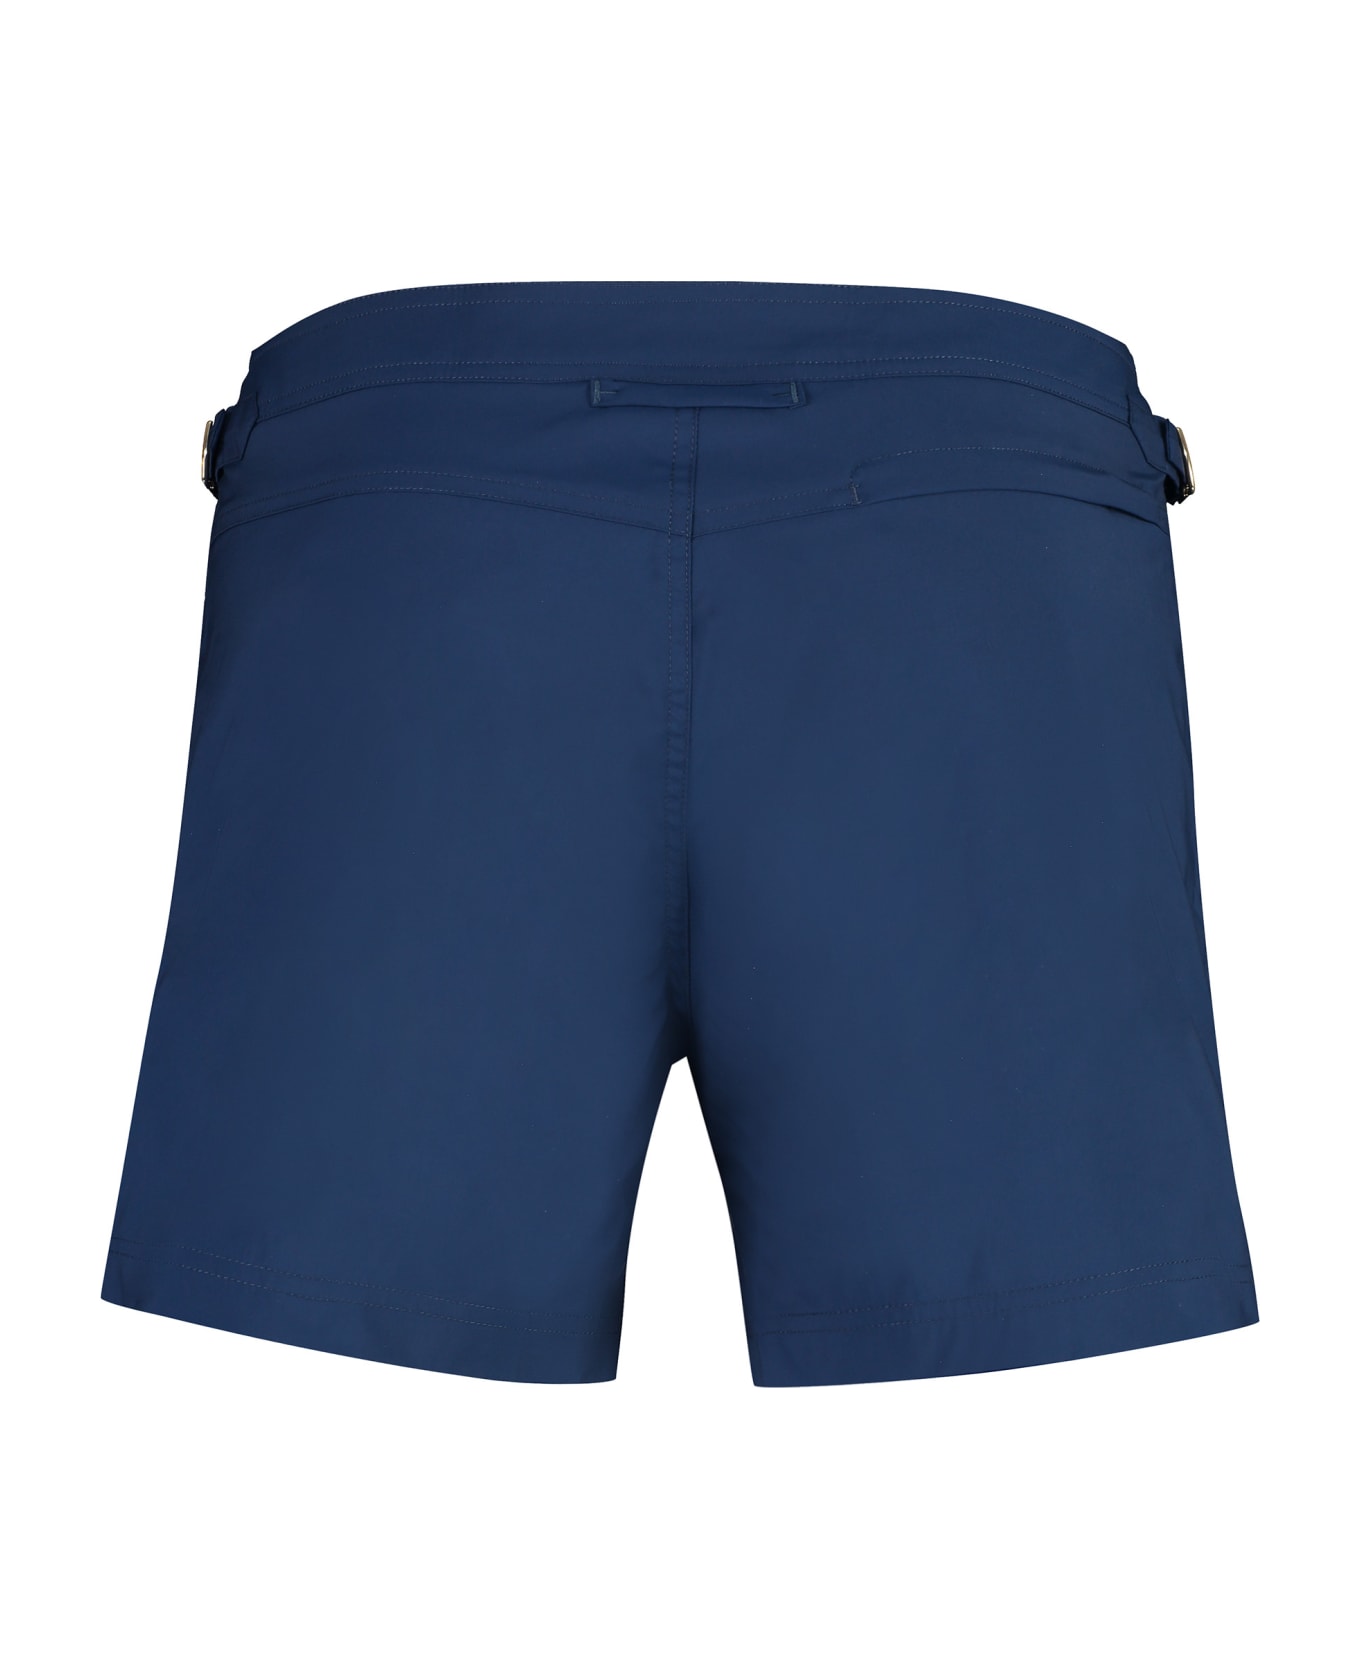 Tom Ford Nylon Swim Shorts - blue